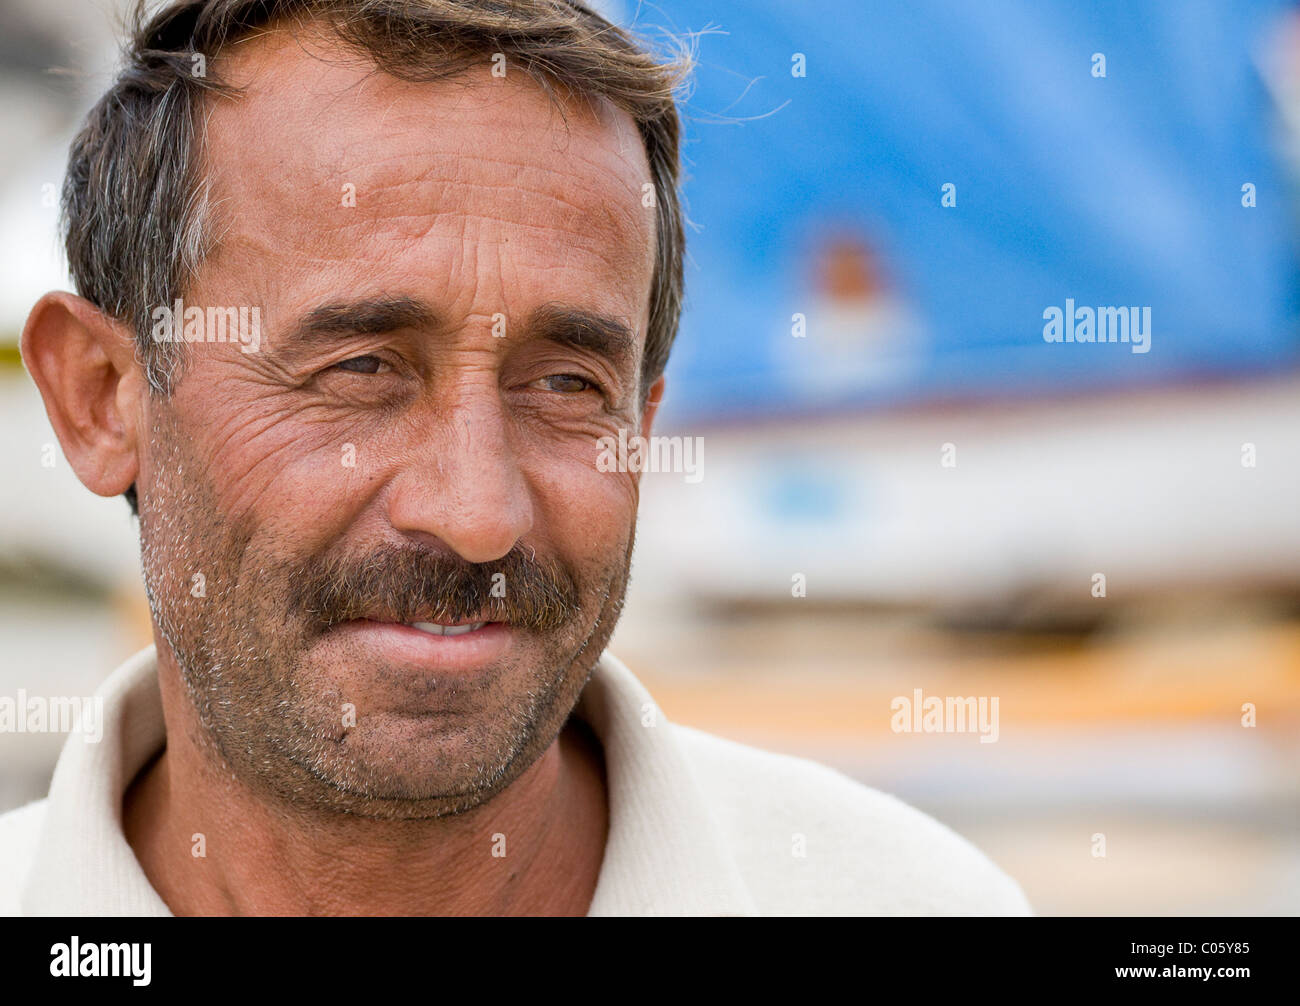 Hassan el constructor del barco. Hassan el barco reparador de pausas, sonrientes que abandona el barco metros frente al mar. Foto de stock